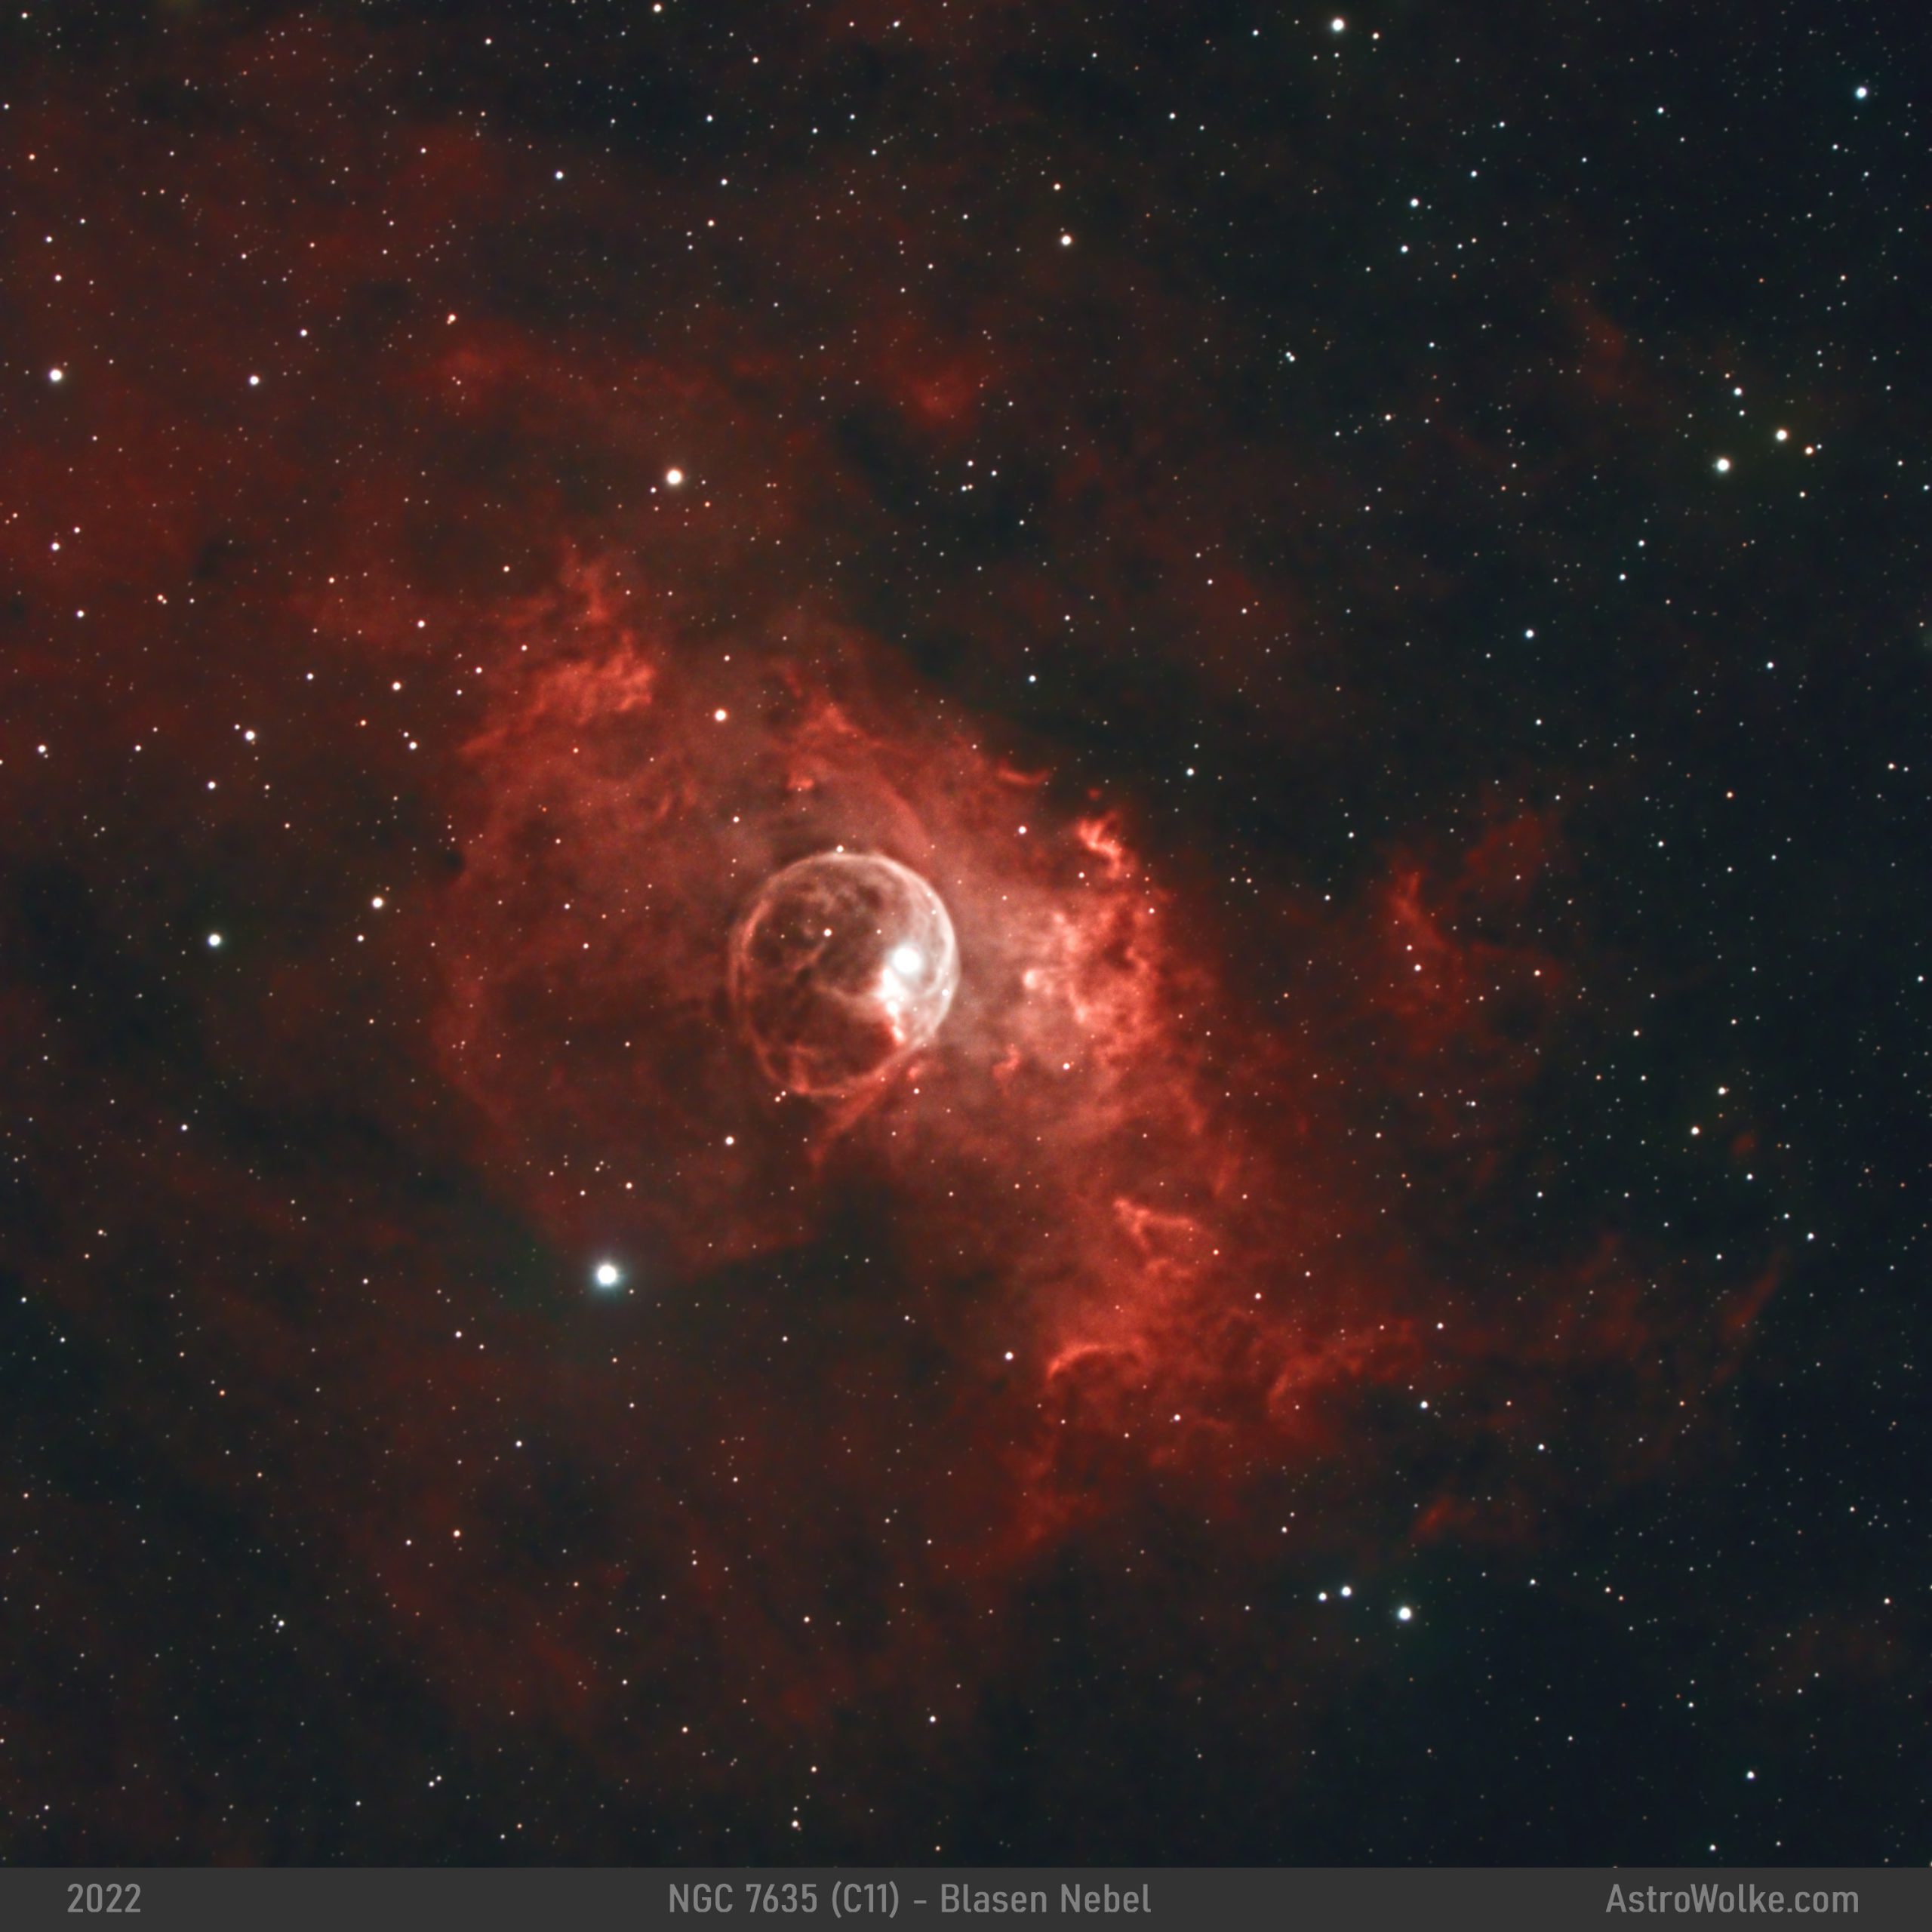 NGC 7635 – Blasen Nebel (C11)